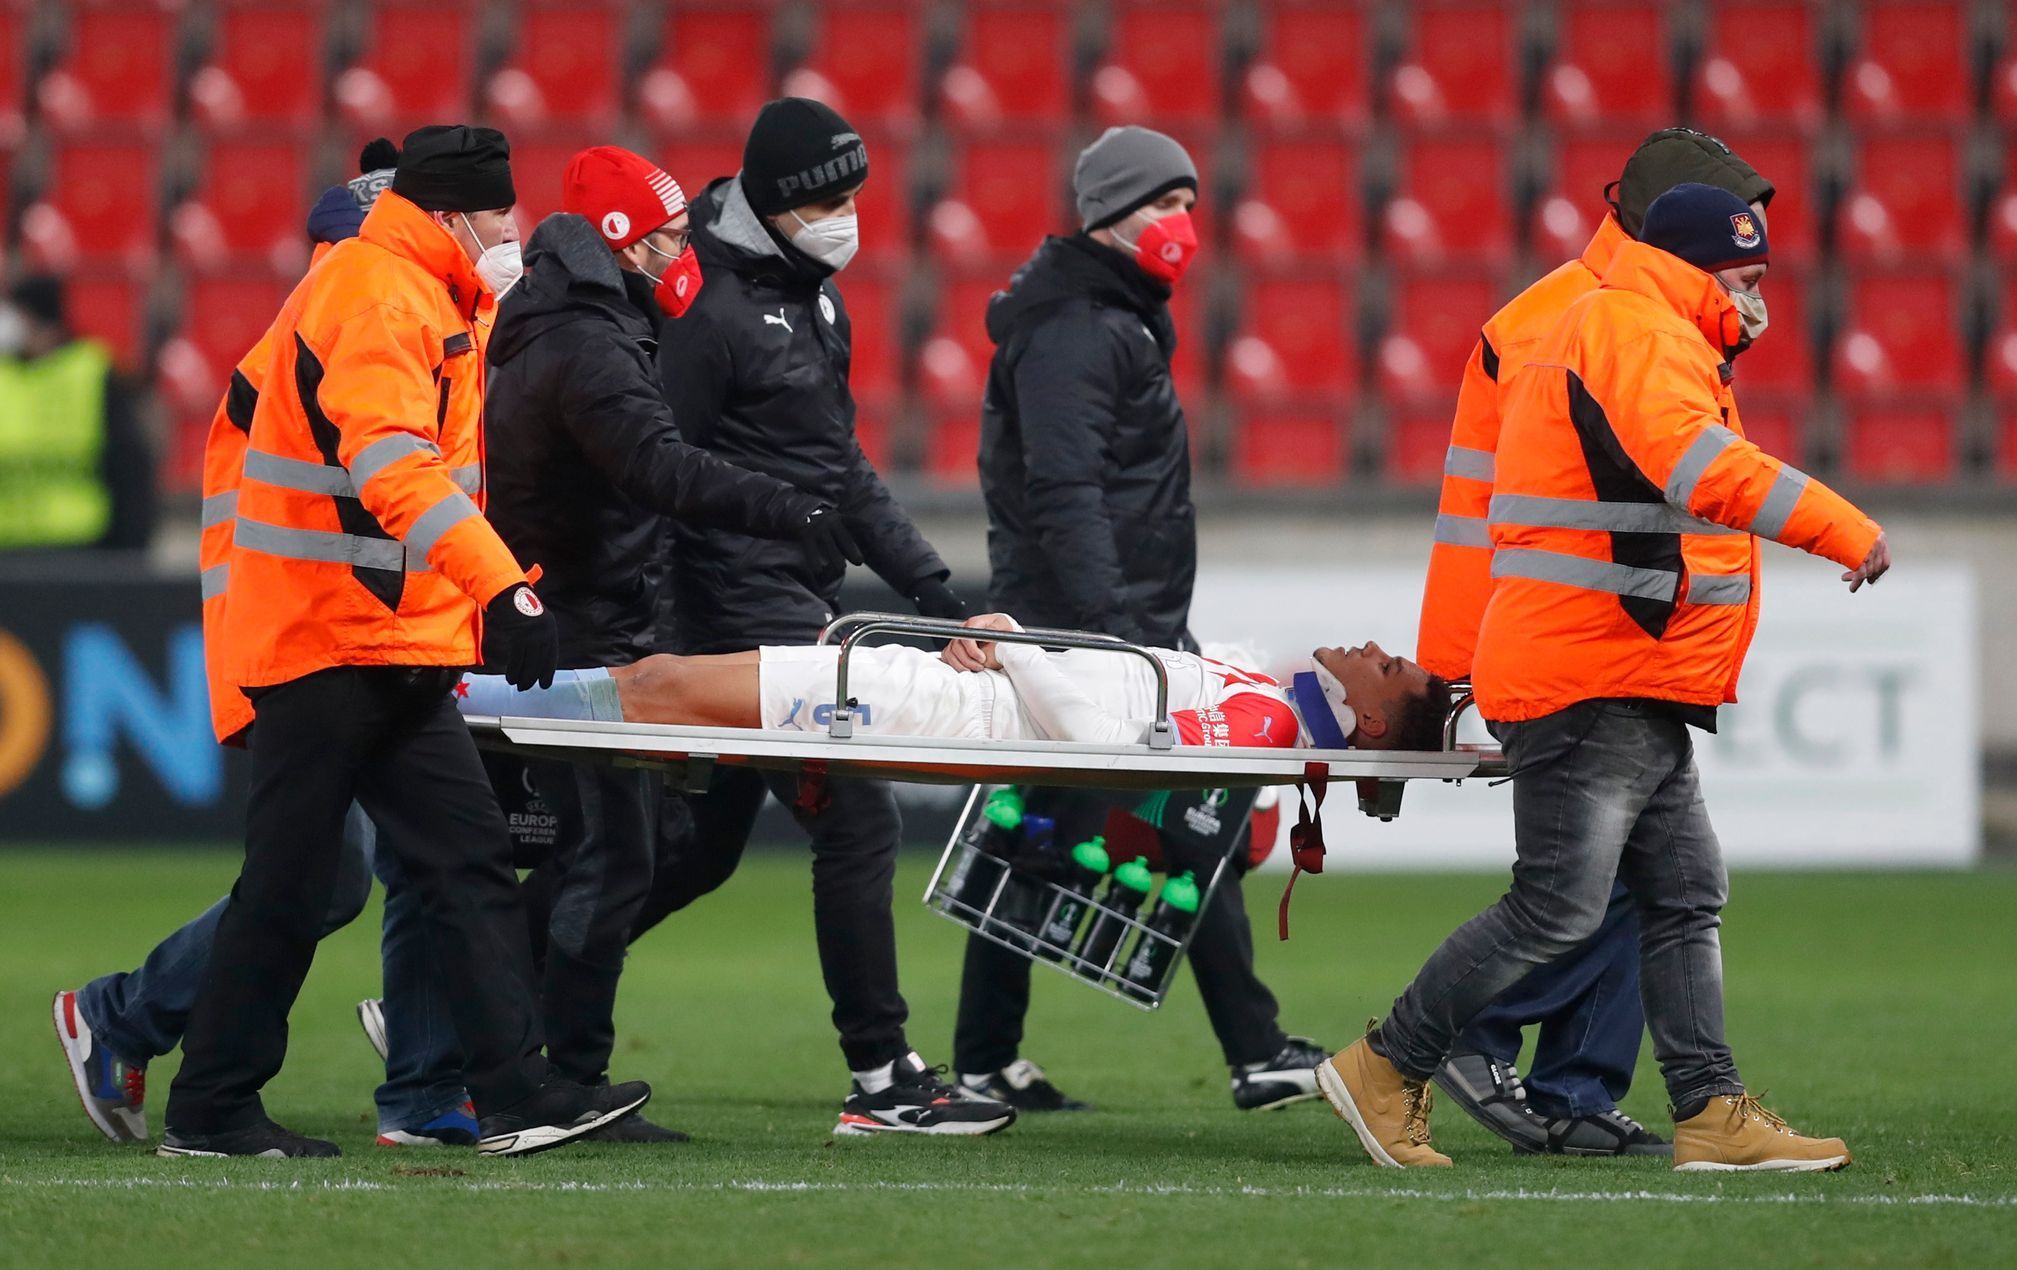 Zranněý Alexander Bah v zápase EL Slavia - Feyenoord